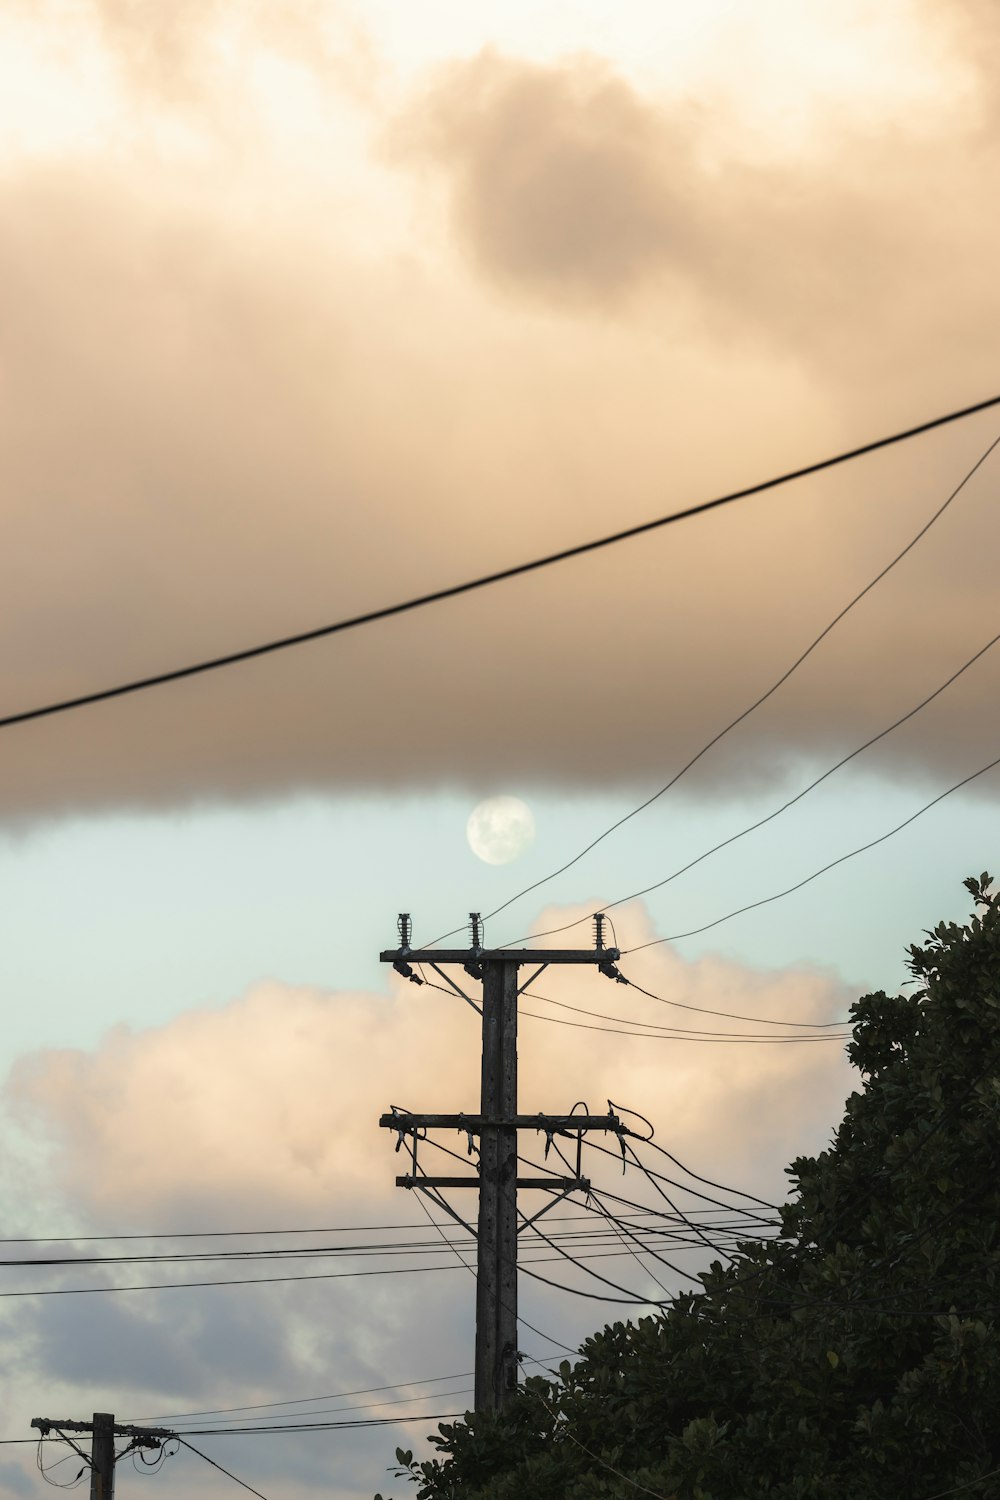 Ein Vollmond ist durch die Wolken über den Stromleitungen zu sehen